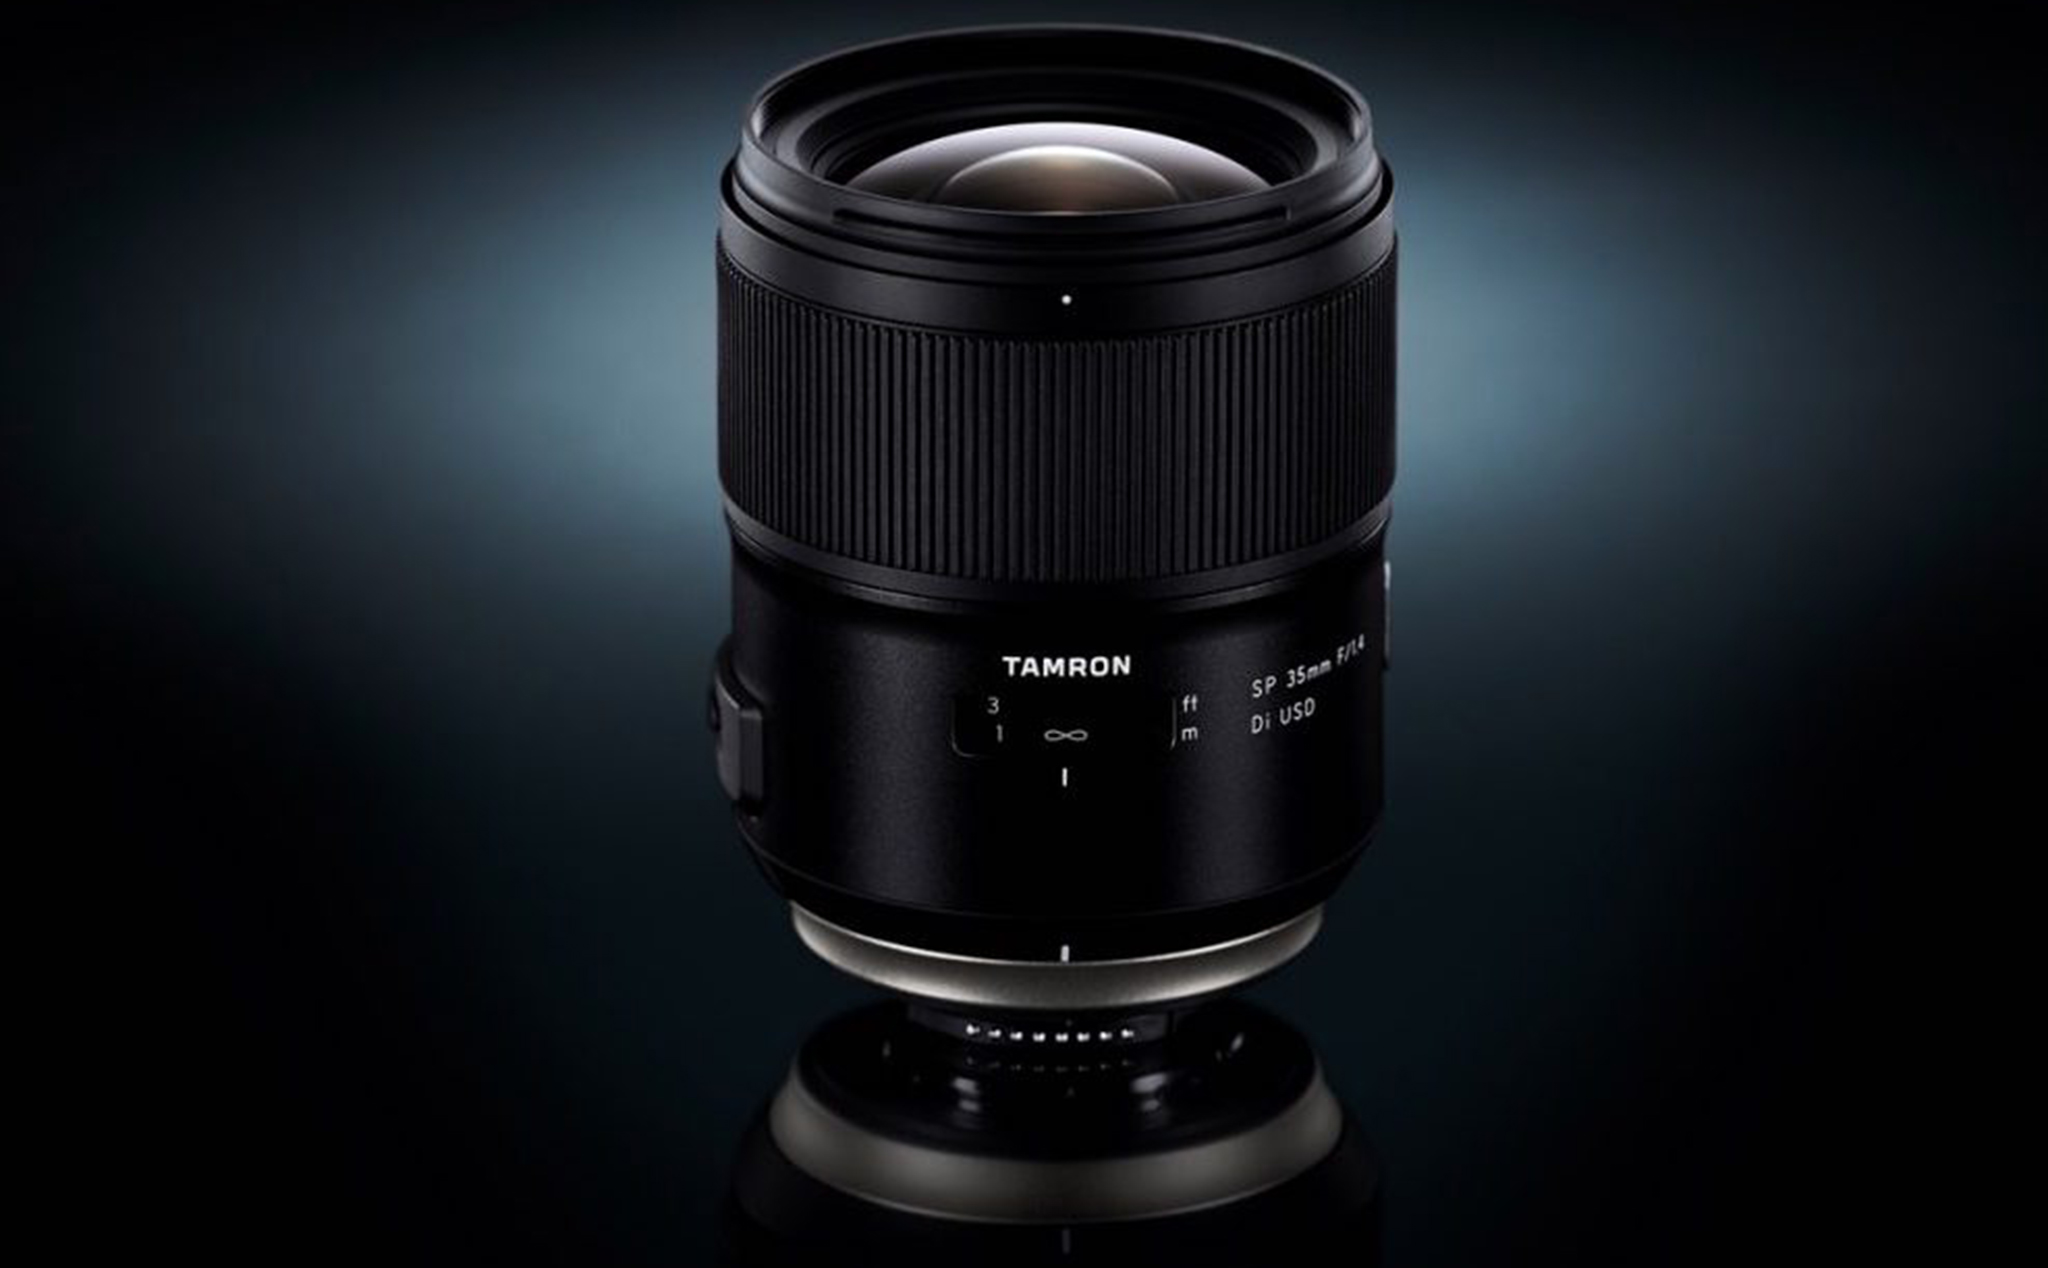 Tamron chính thức bán ống kính SP 35mm f/1.4 Di USD cho máy ảnh fullframe DSLR Nikon và Canon